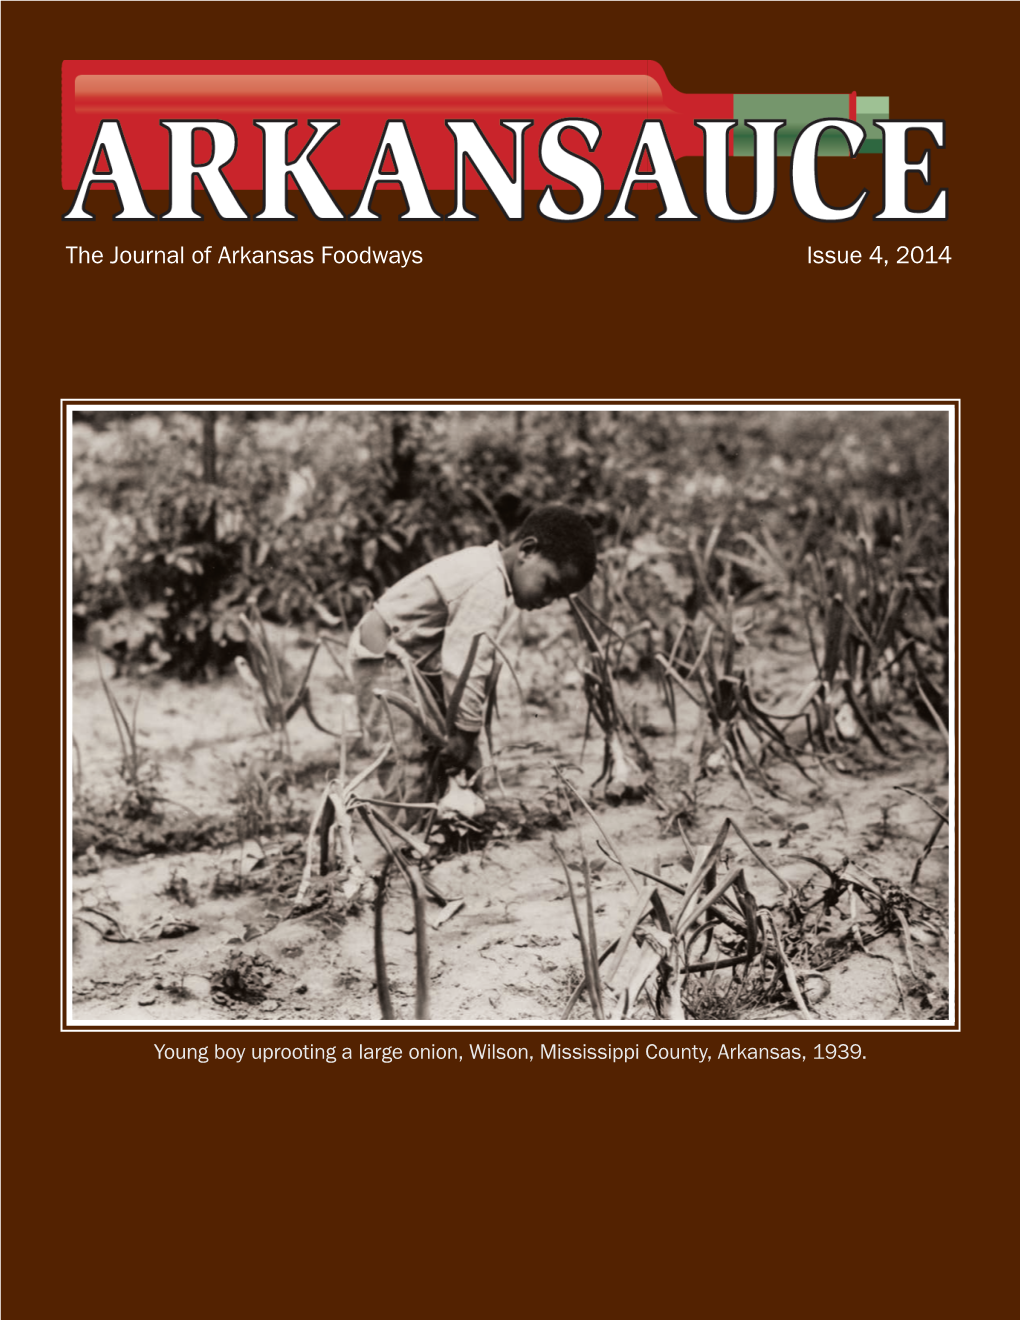 Arkansauce, the Journal of Arkansas Foodways